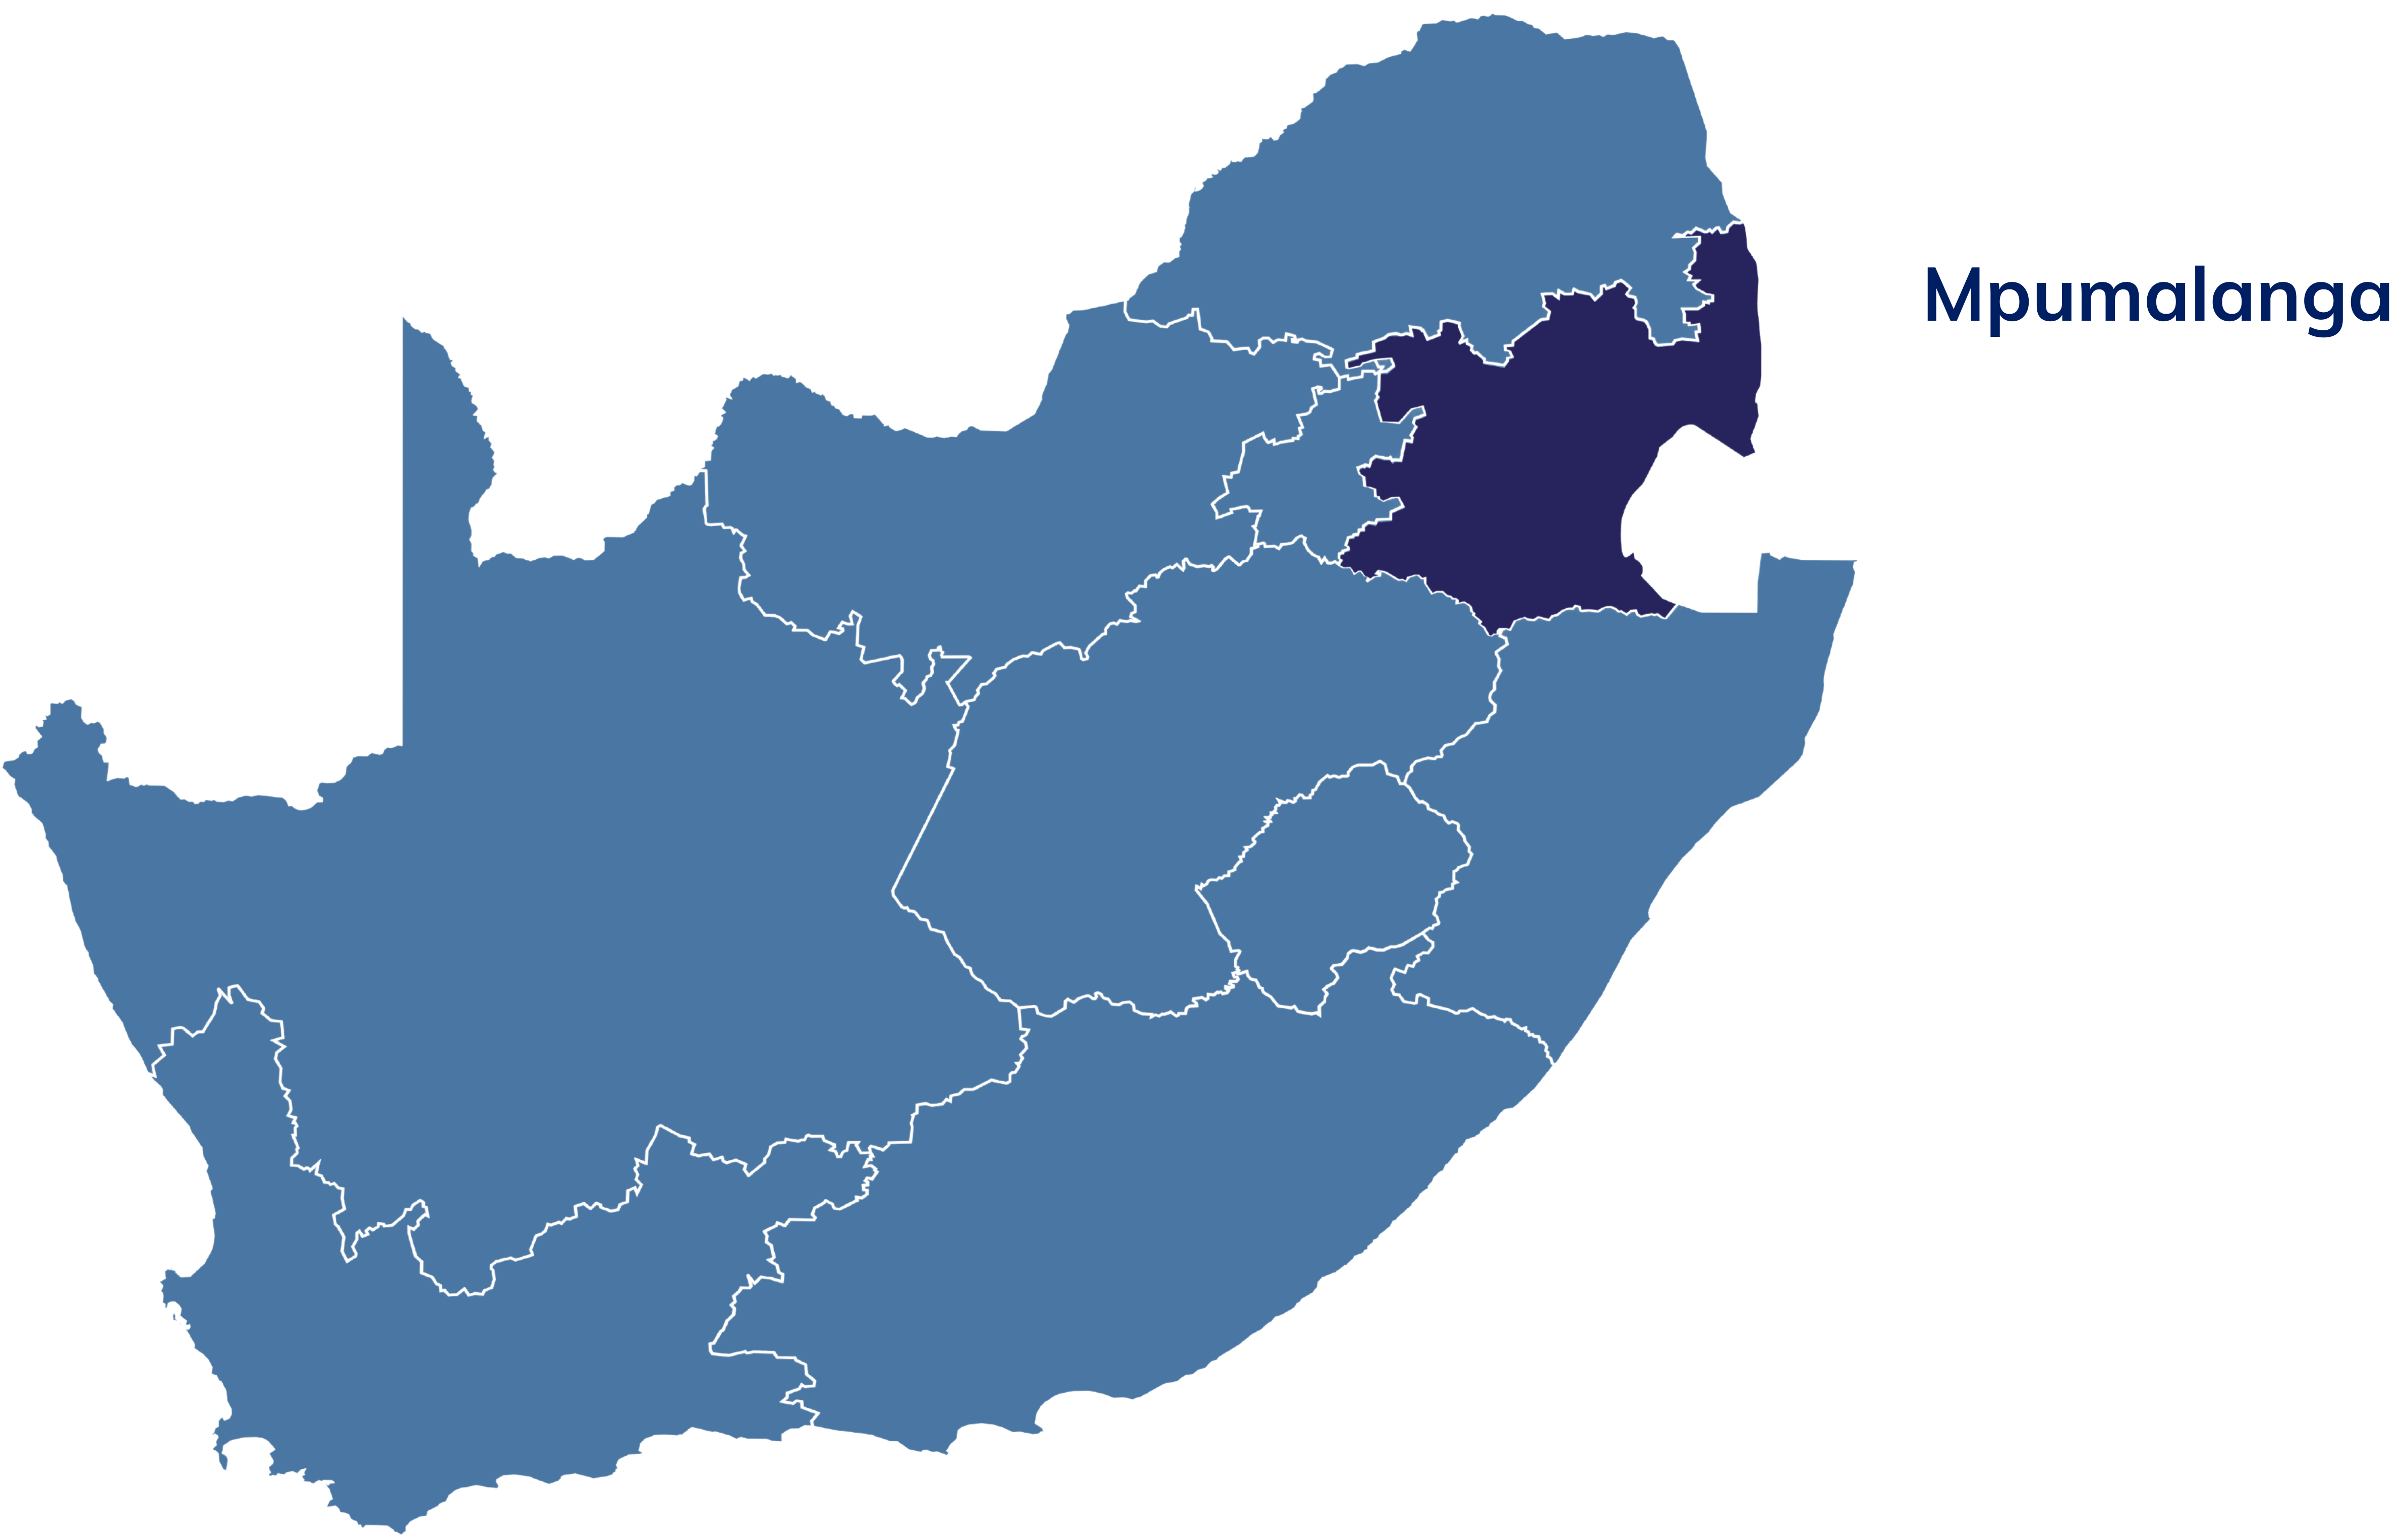 SA Mmapulanga map V2